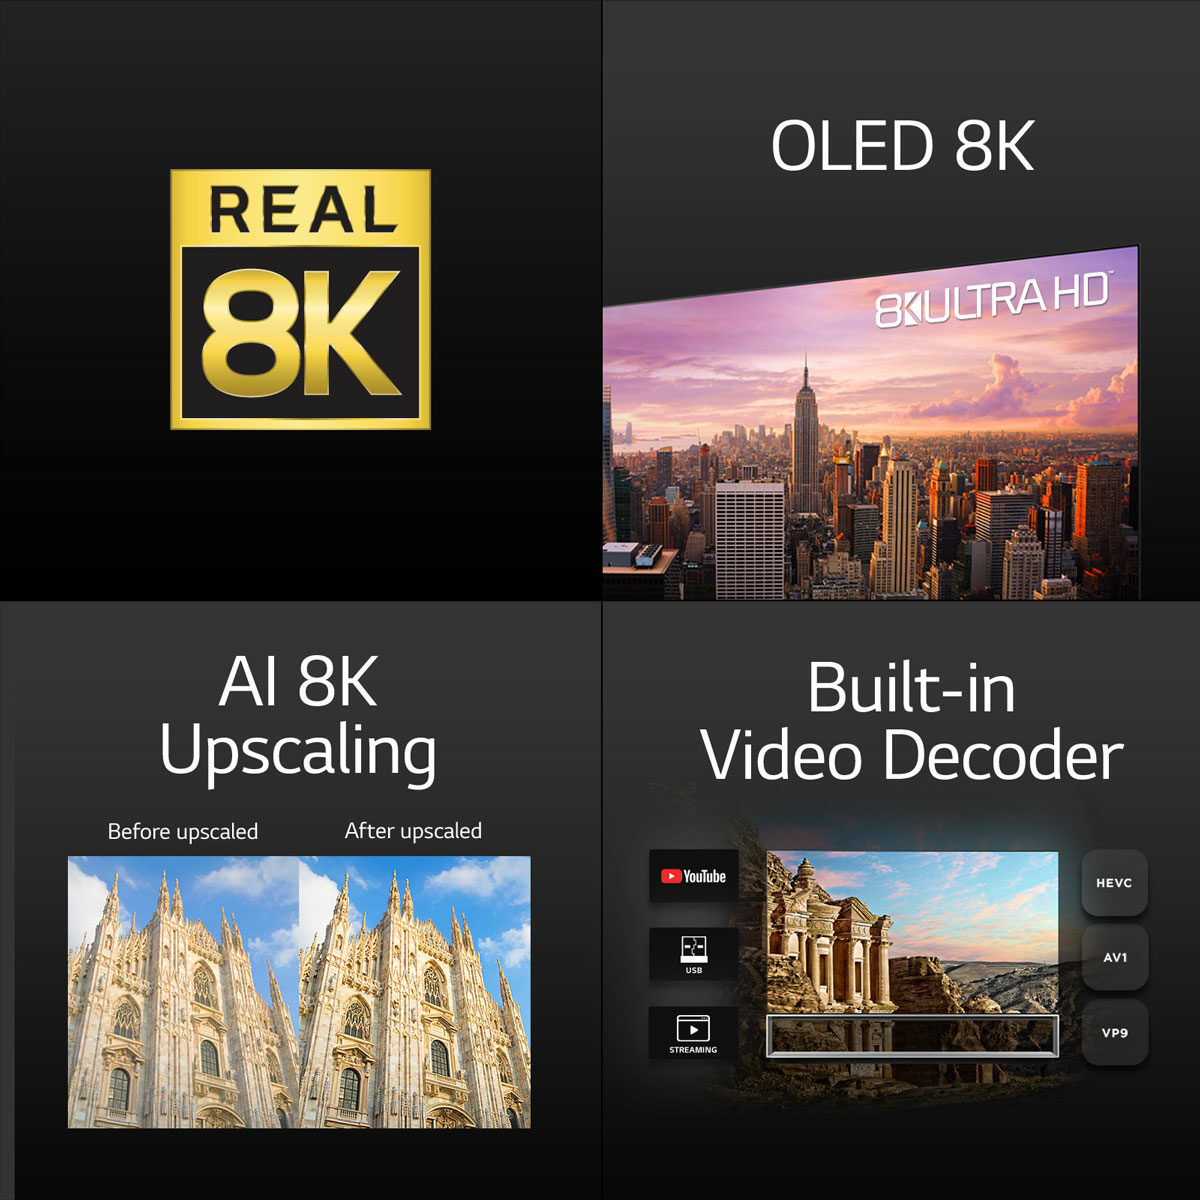 LG OLED TV 8K